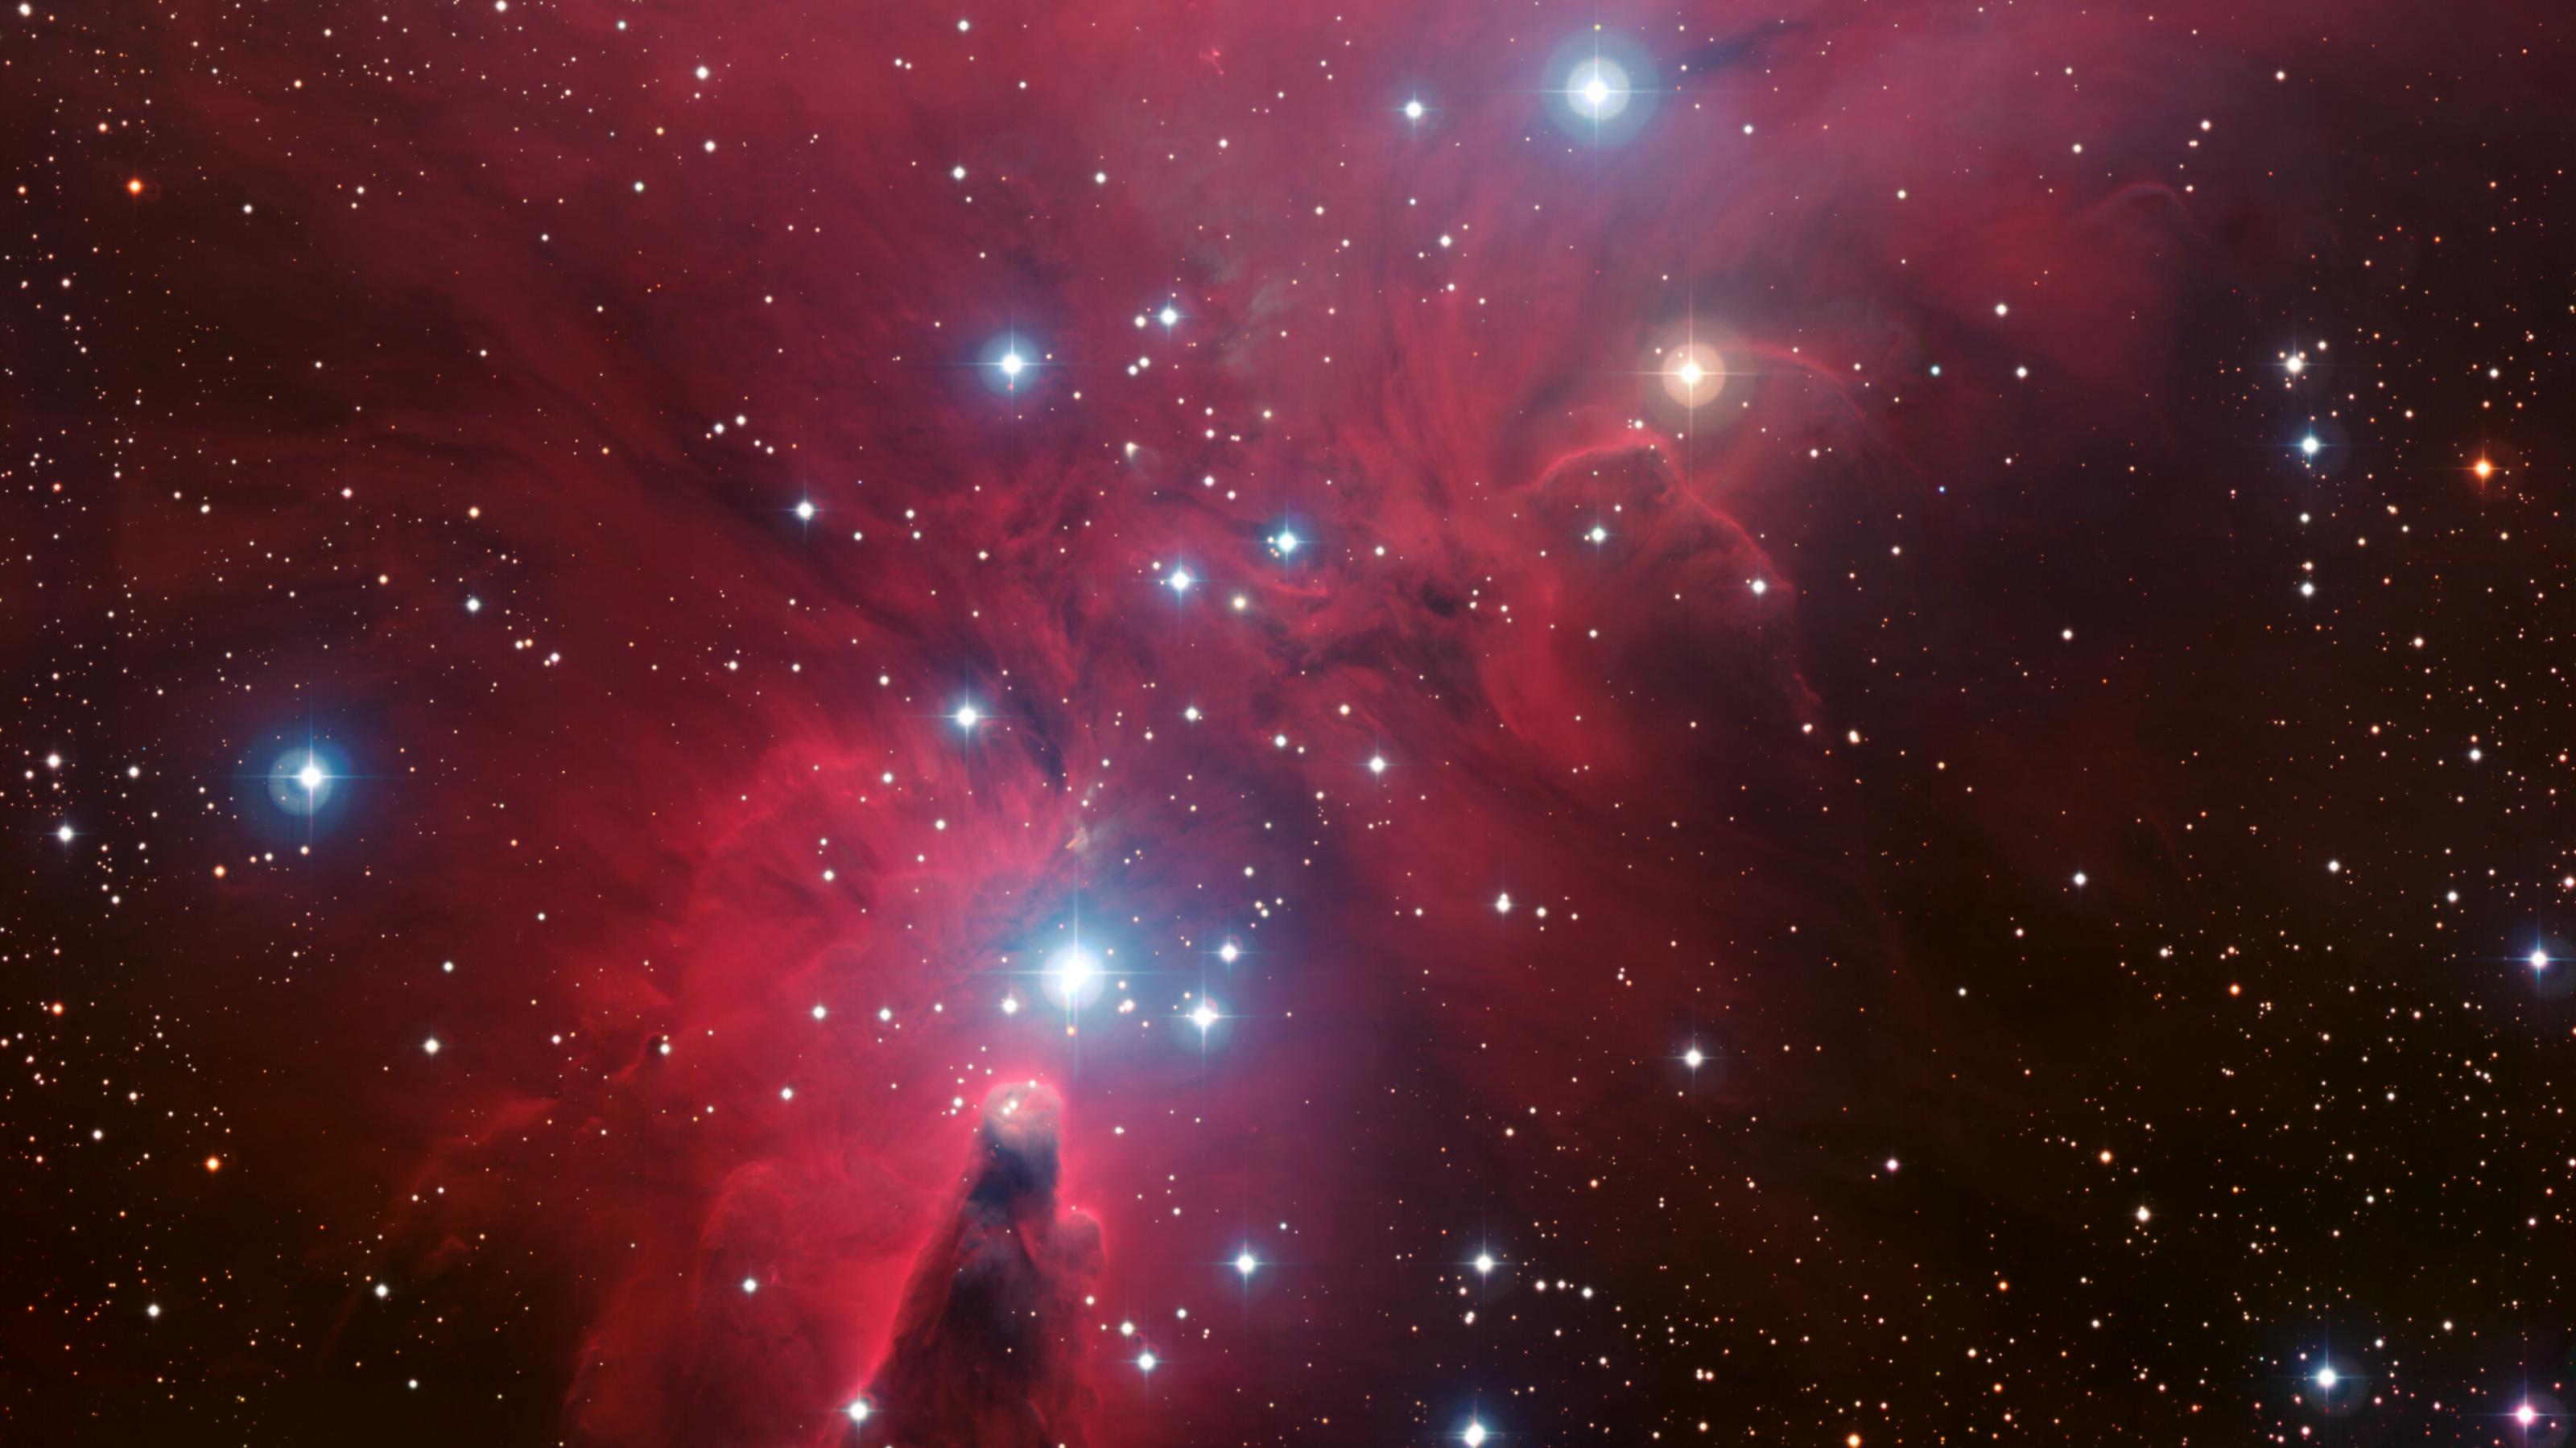 Eine rötliche Nebelregion mti interstellarer Materie bezeichnet als NGC 2264, im Vordergrund prangen helle bläuliche Sterne.